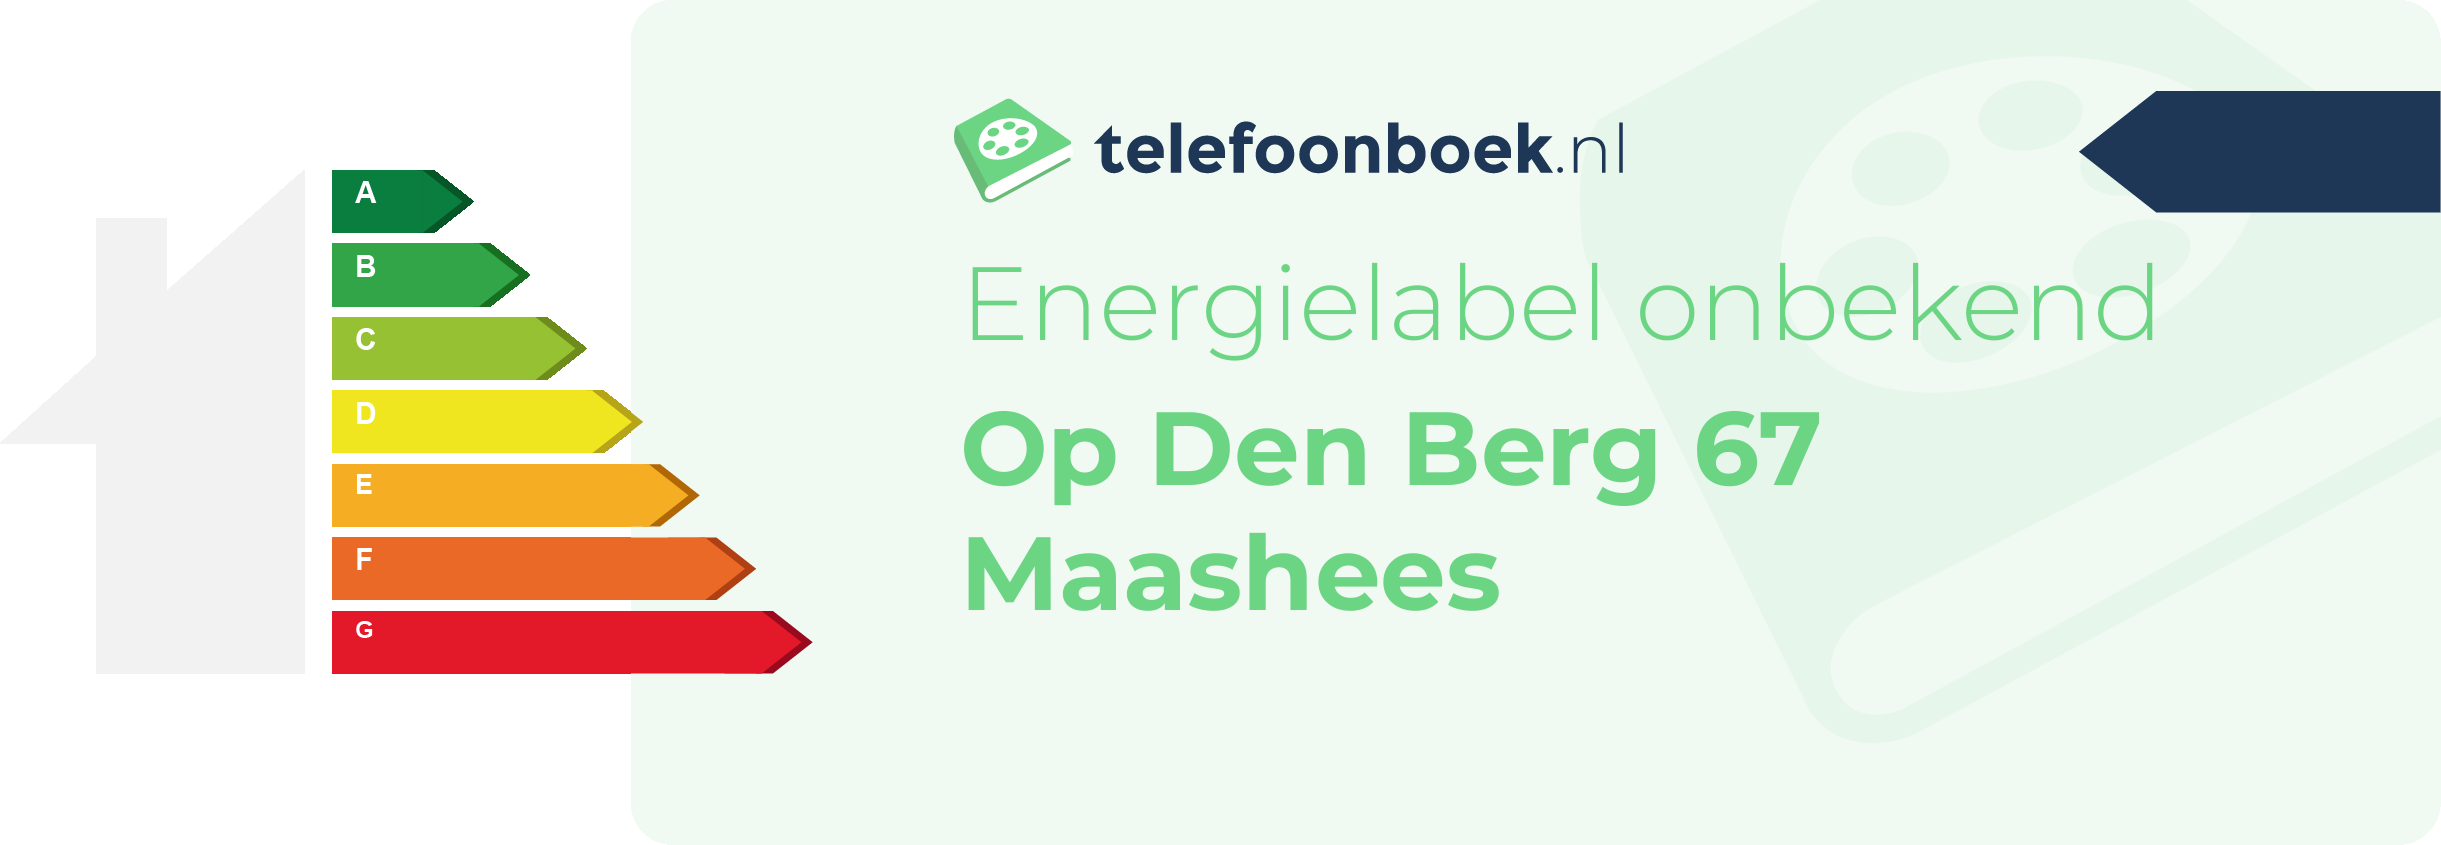 Energielabel Op Den Berg 67 Maashees